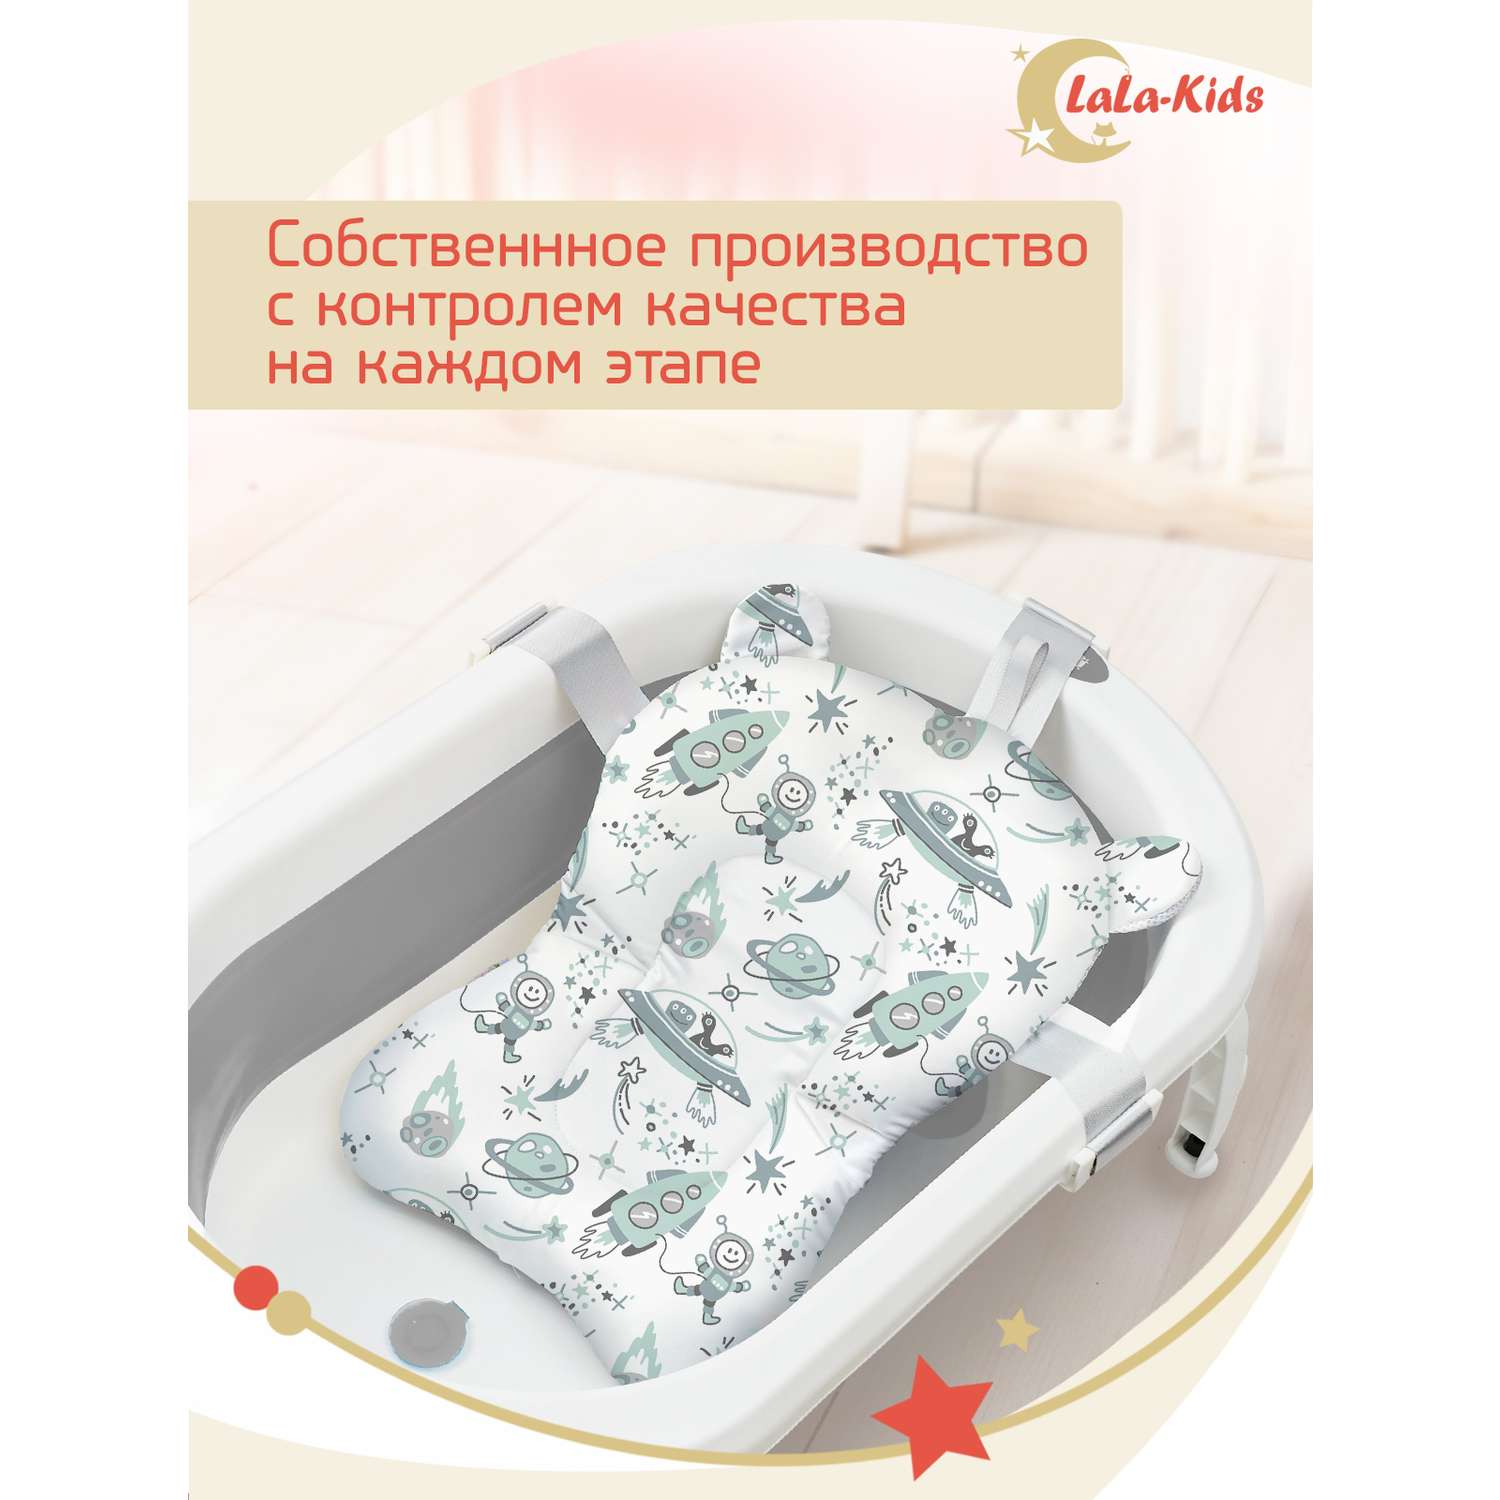 Складная ванночка LaLa-Kids для купания новорожденных с термометром и матрасиком в комплекте - фото 18